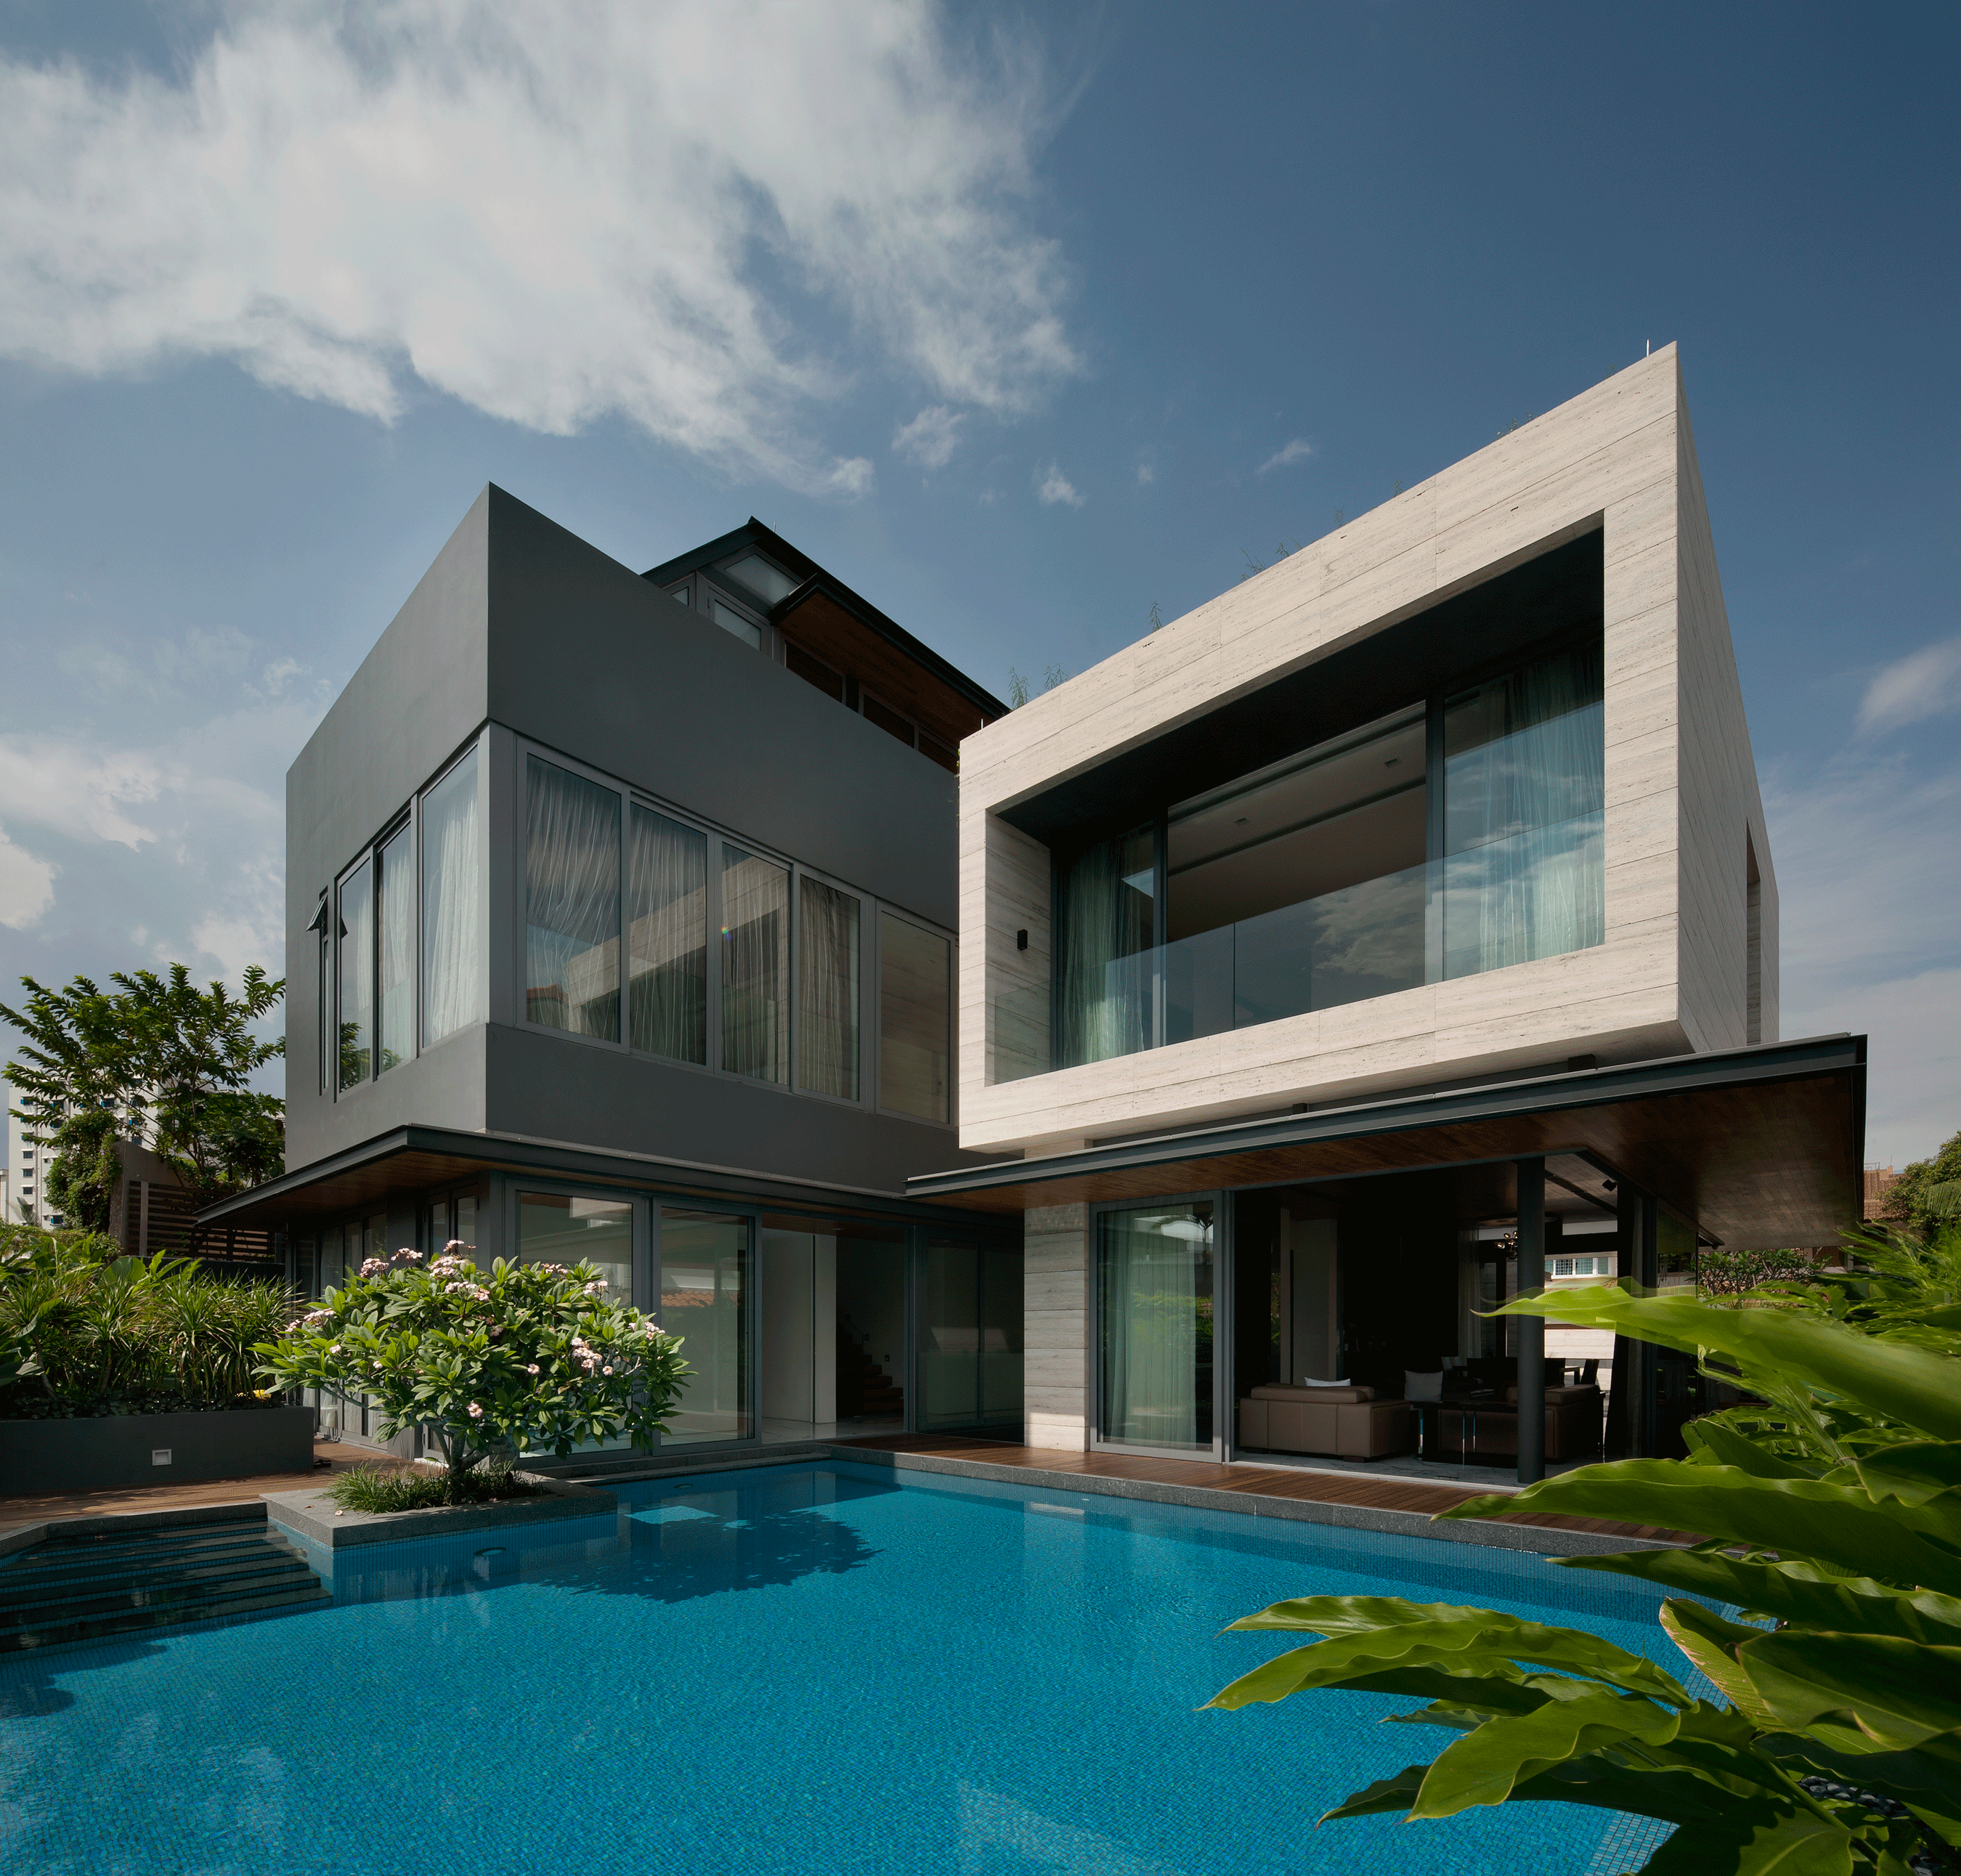 Architecture houses. Модерн Виллас Сочи. Вилла Мистраль Сингапур. Дом в стиле модернхауз. Модернистский дом в США частная архитектура.